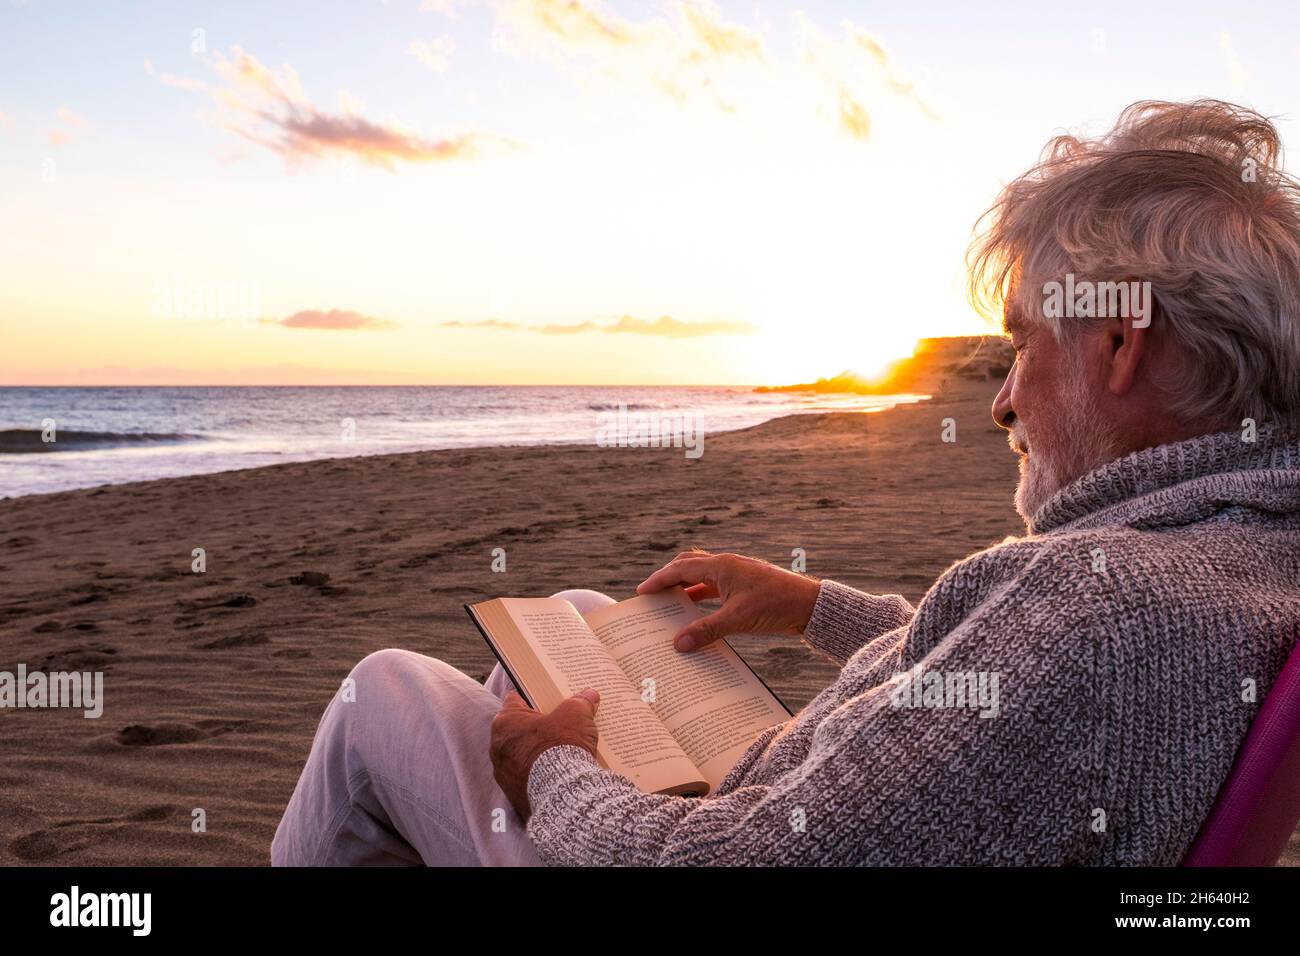 Ein reifer und alter Mann liest ein Buch, sitzt auf einem Stuhl am Strand auf dem Sand mit dem Sonnenuntergang im Hintergrund. Männliche Person genießt das Meer oder das Meer. Stockfoto